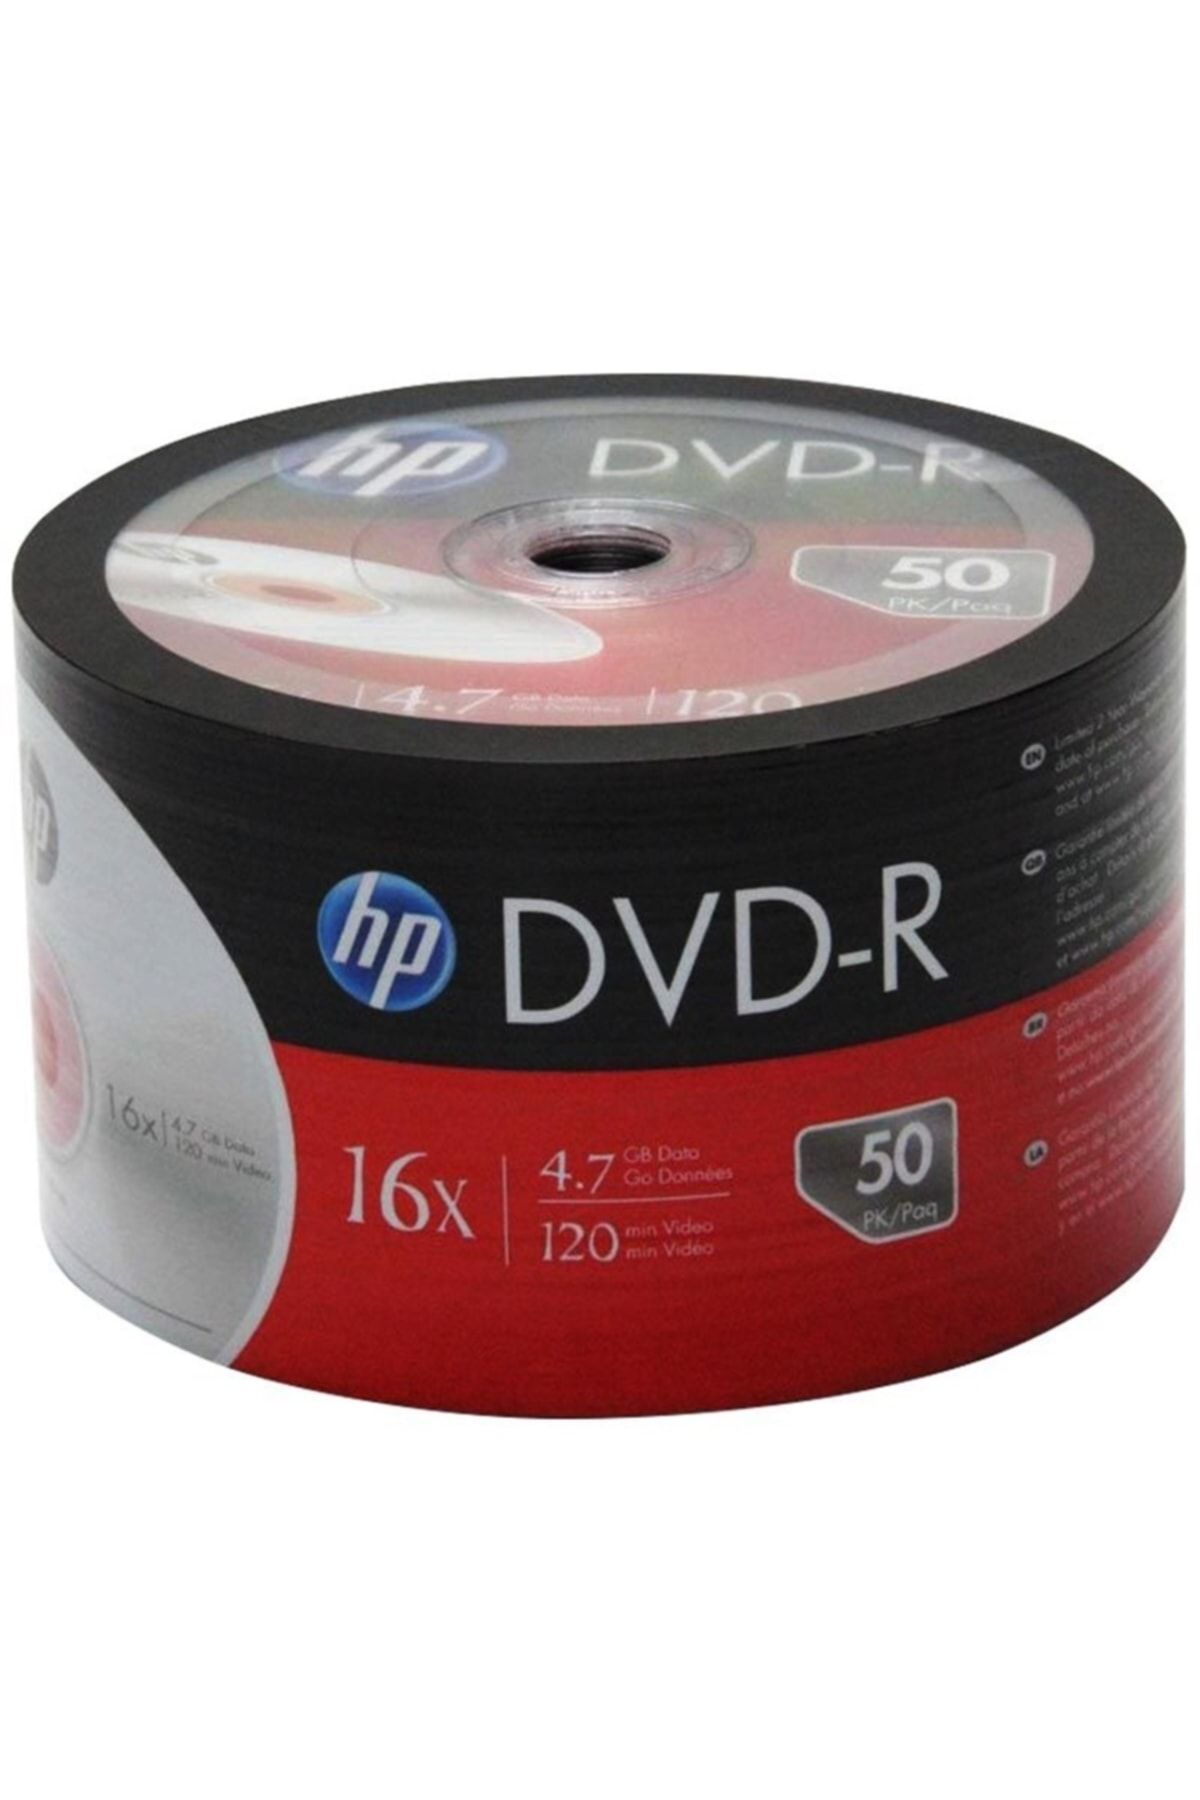 HP DME00070-3 DVD-R 4.7 GB 120 MİN 16X 50Lİ PAKET FİYAT